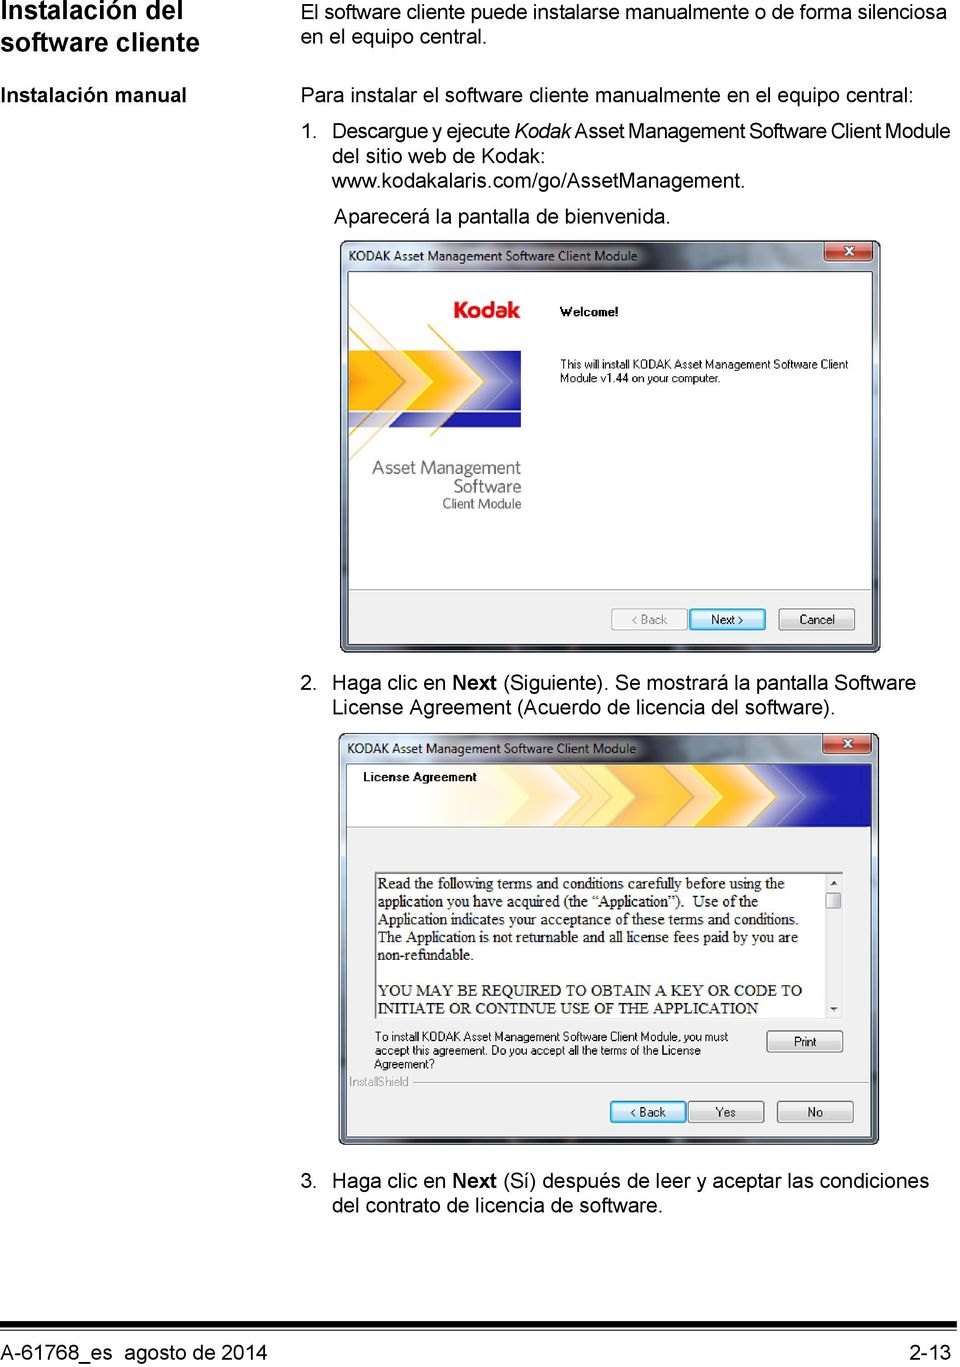 Descargue y ejecute Kodak Asset Management Software Client Module del sitio web de Kodak: www.kodakalaris.com/go/assetmanagement.